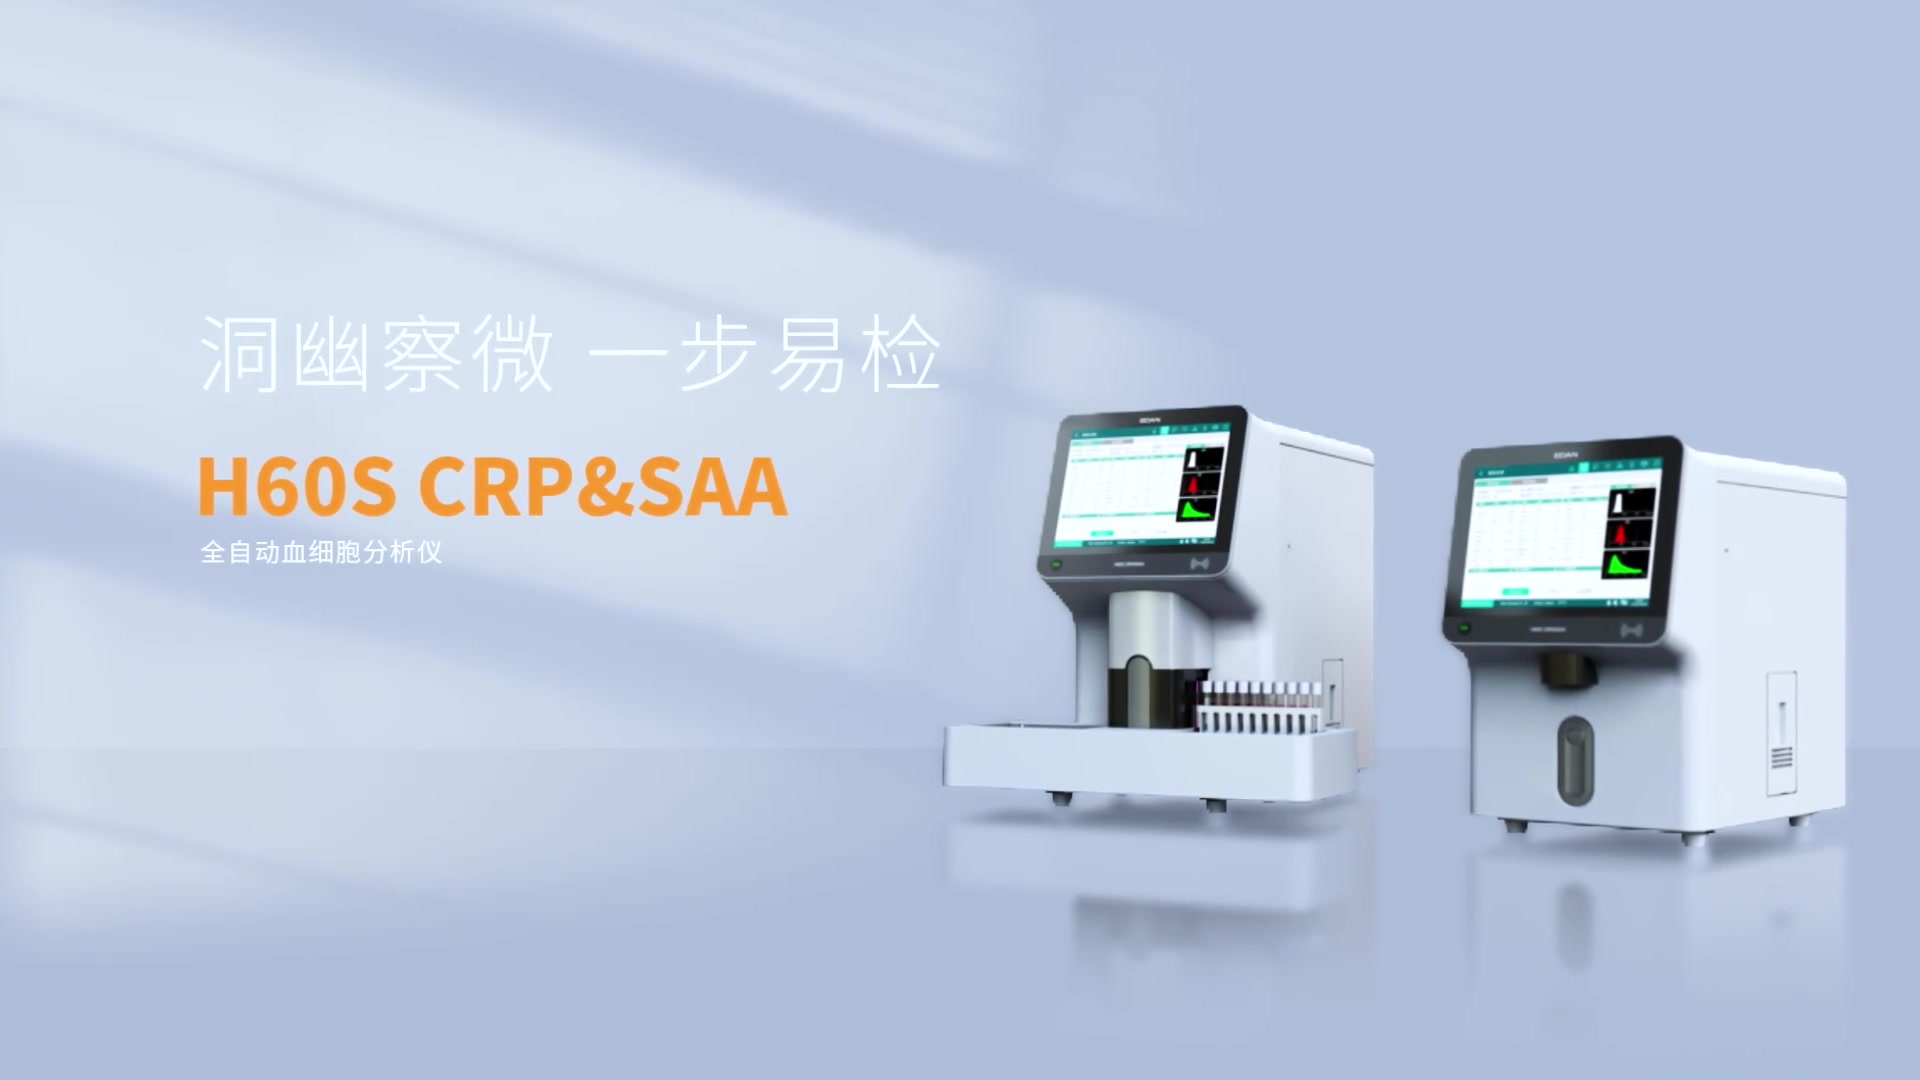 洞幽察微 一步易检——H60S CRP&SAA 全自动血细胞分析仪